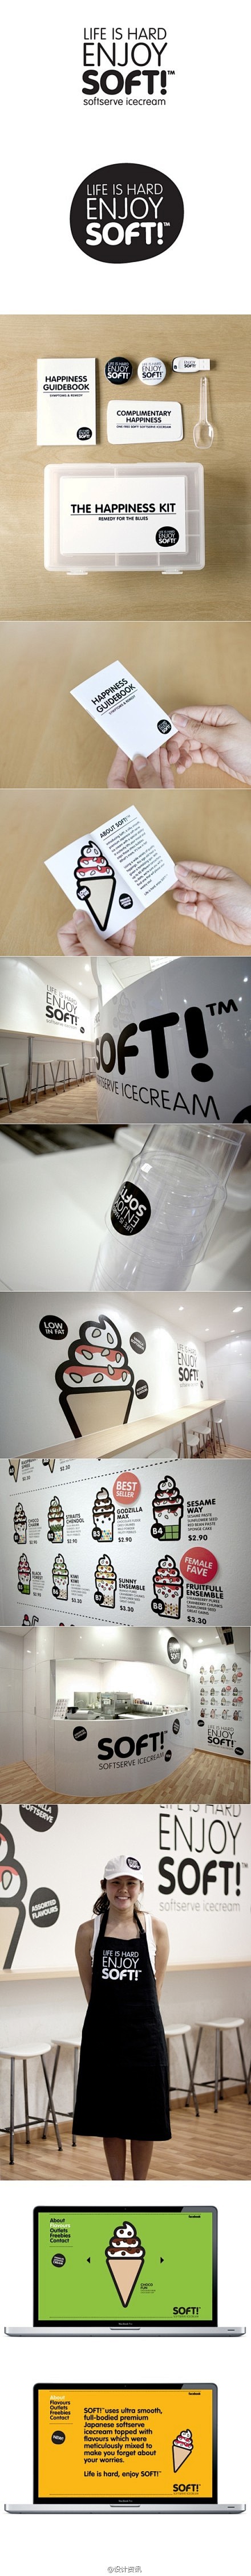 >>>>>SoftTM冷饮店品牌形象设计...